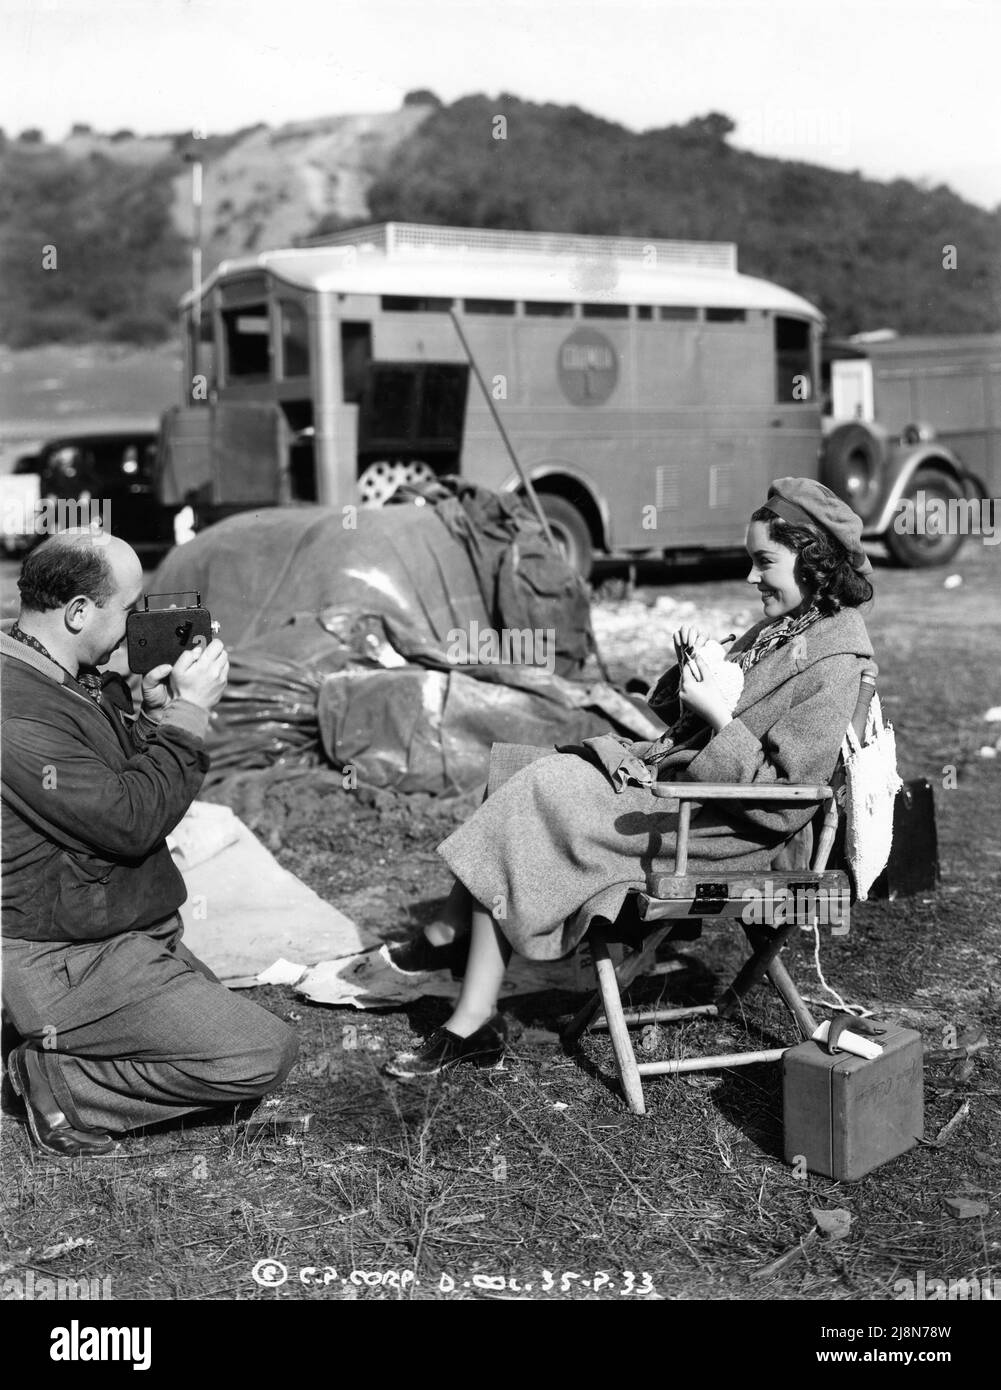 Le réalisateur JOHN BRAHM reprend des films de MAUREEN O'Sullivan tricodant avec son appareil photo Cine Kodak 8 sur place, sans le savoir pendant le tournage de JOHN BRAHM Columbia Pictures, réalisateur américain en direct en 1939 Banque D'Images